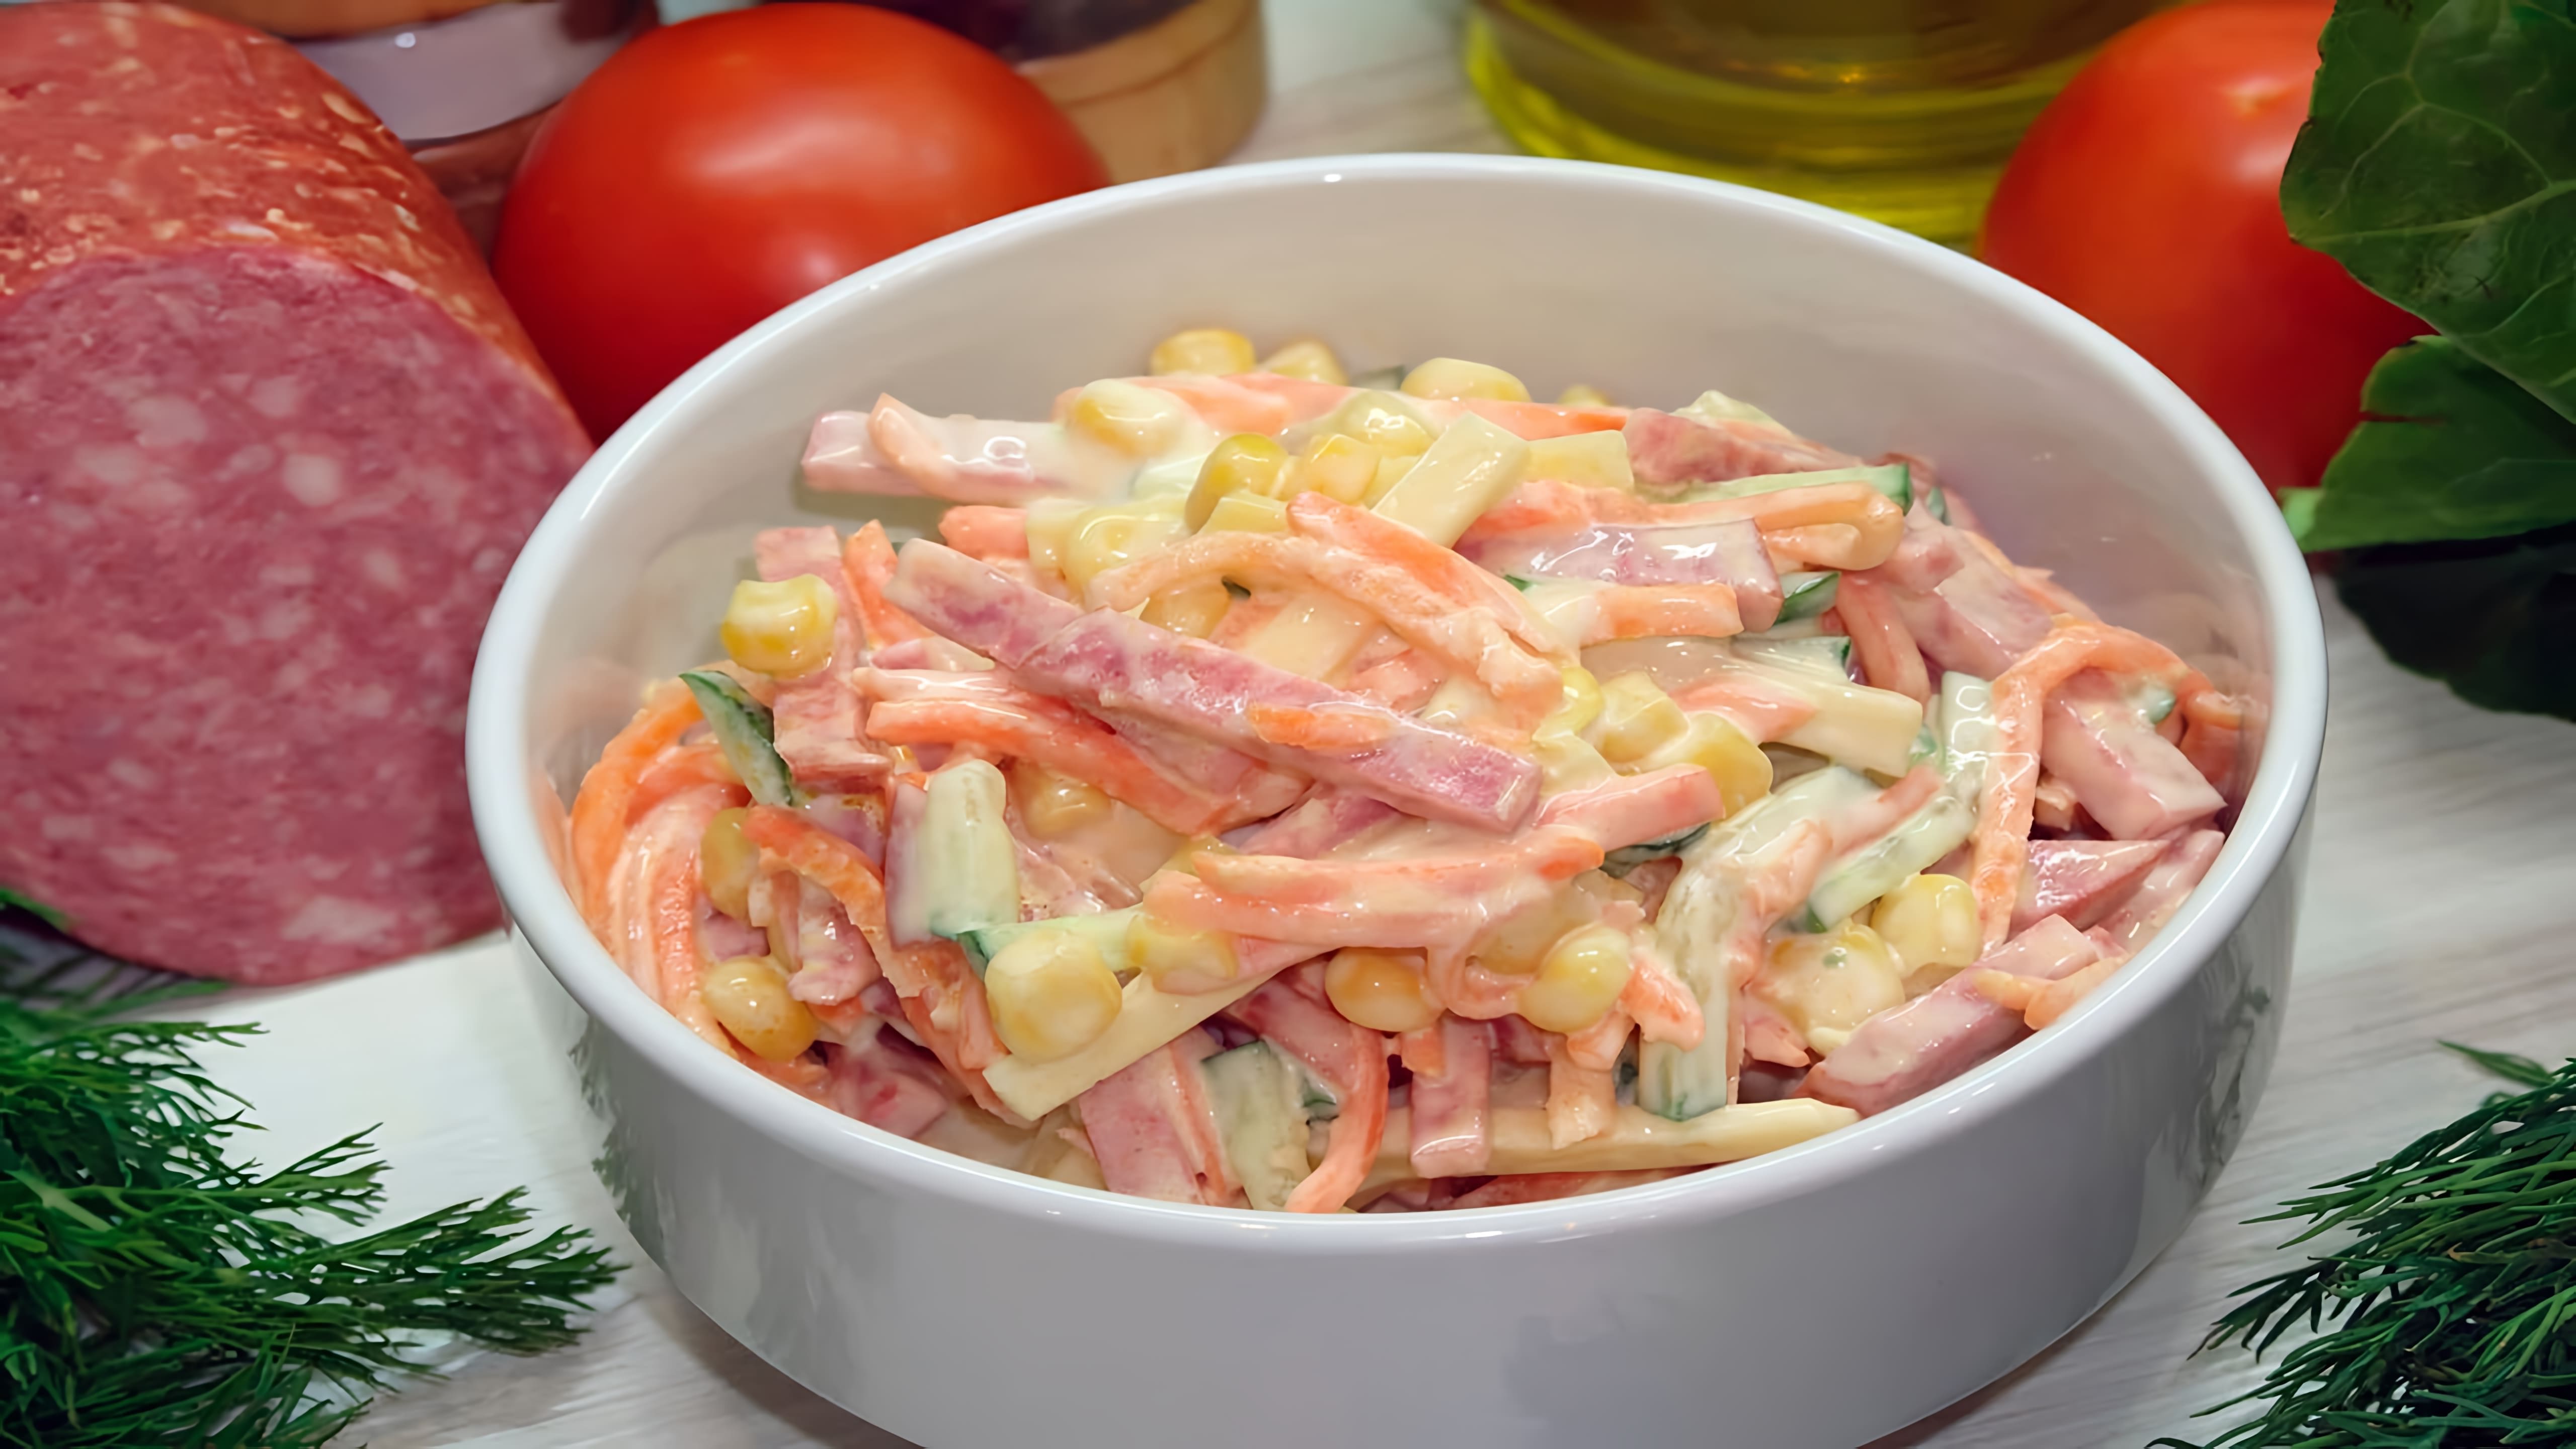 В этом видео демонстрируется рецепт салата "Венеция", который готовится с использованием копченой колбасы, корейской моркови, консервированной кукурузы, свежего огурца, сыра и майонеза